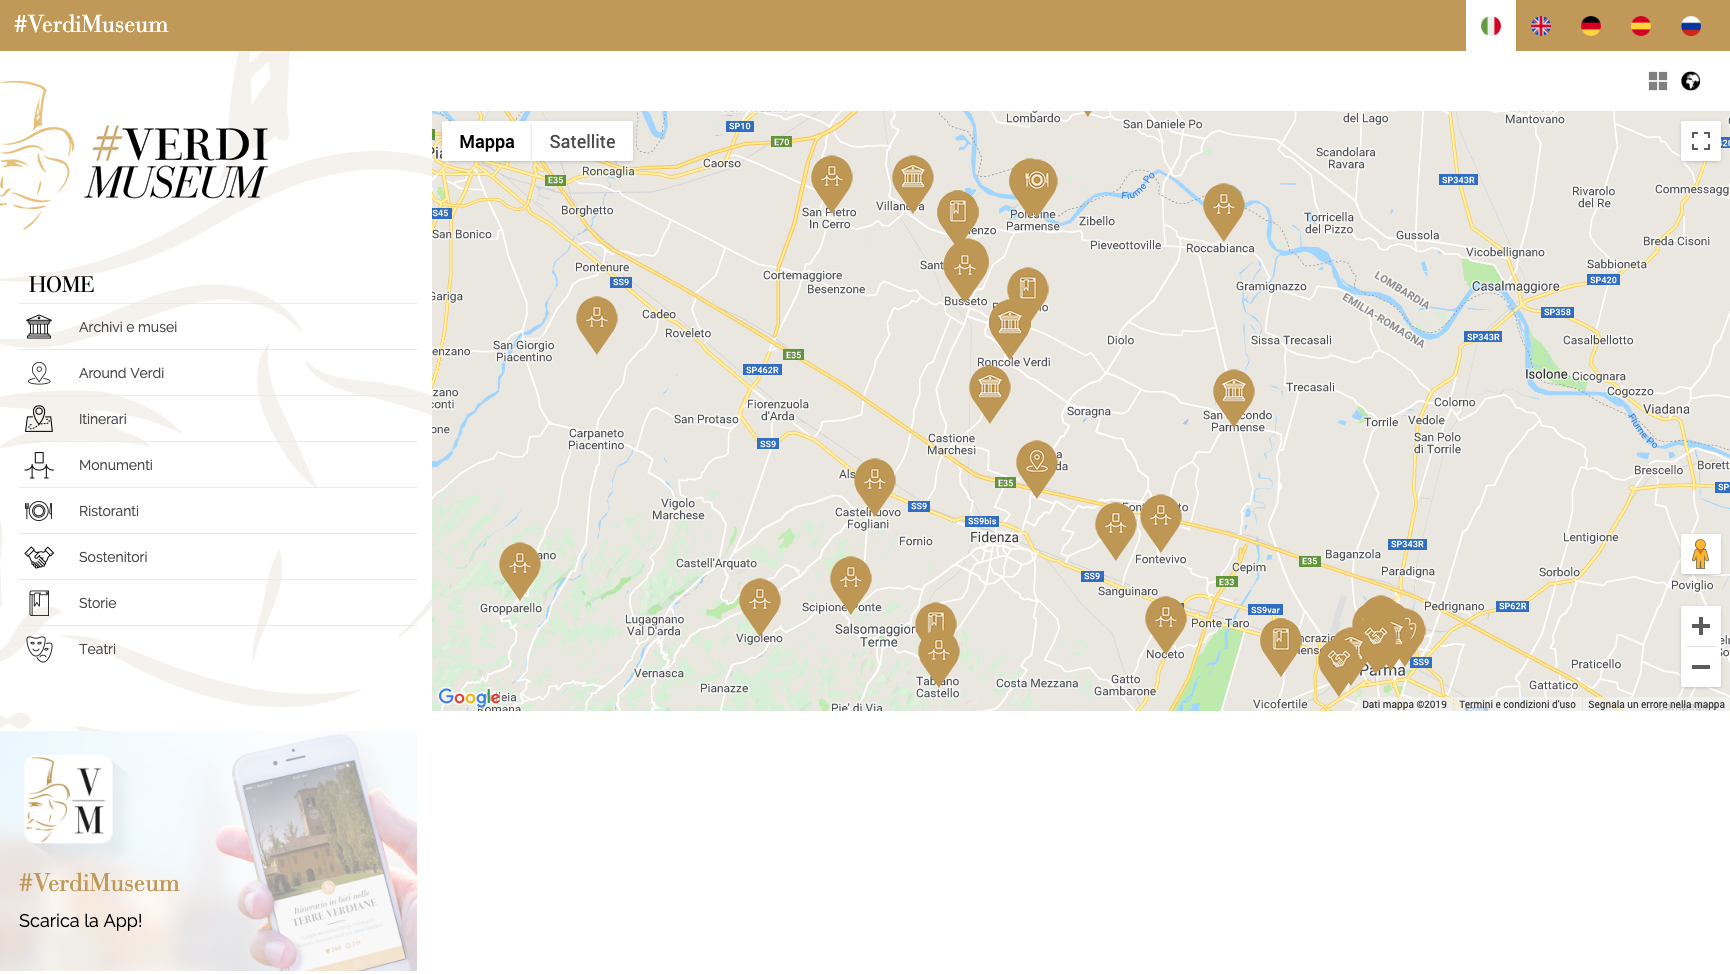 Web App - consulta i POI su mappa